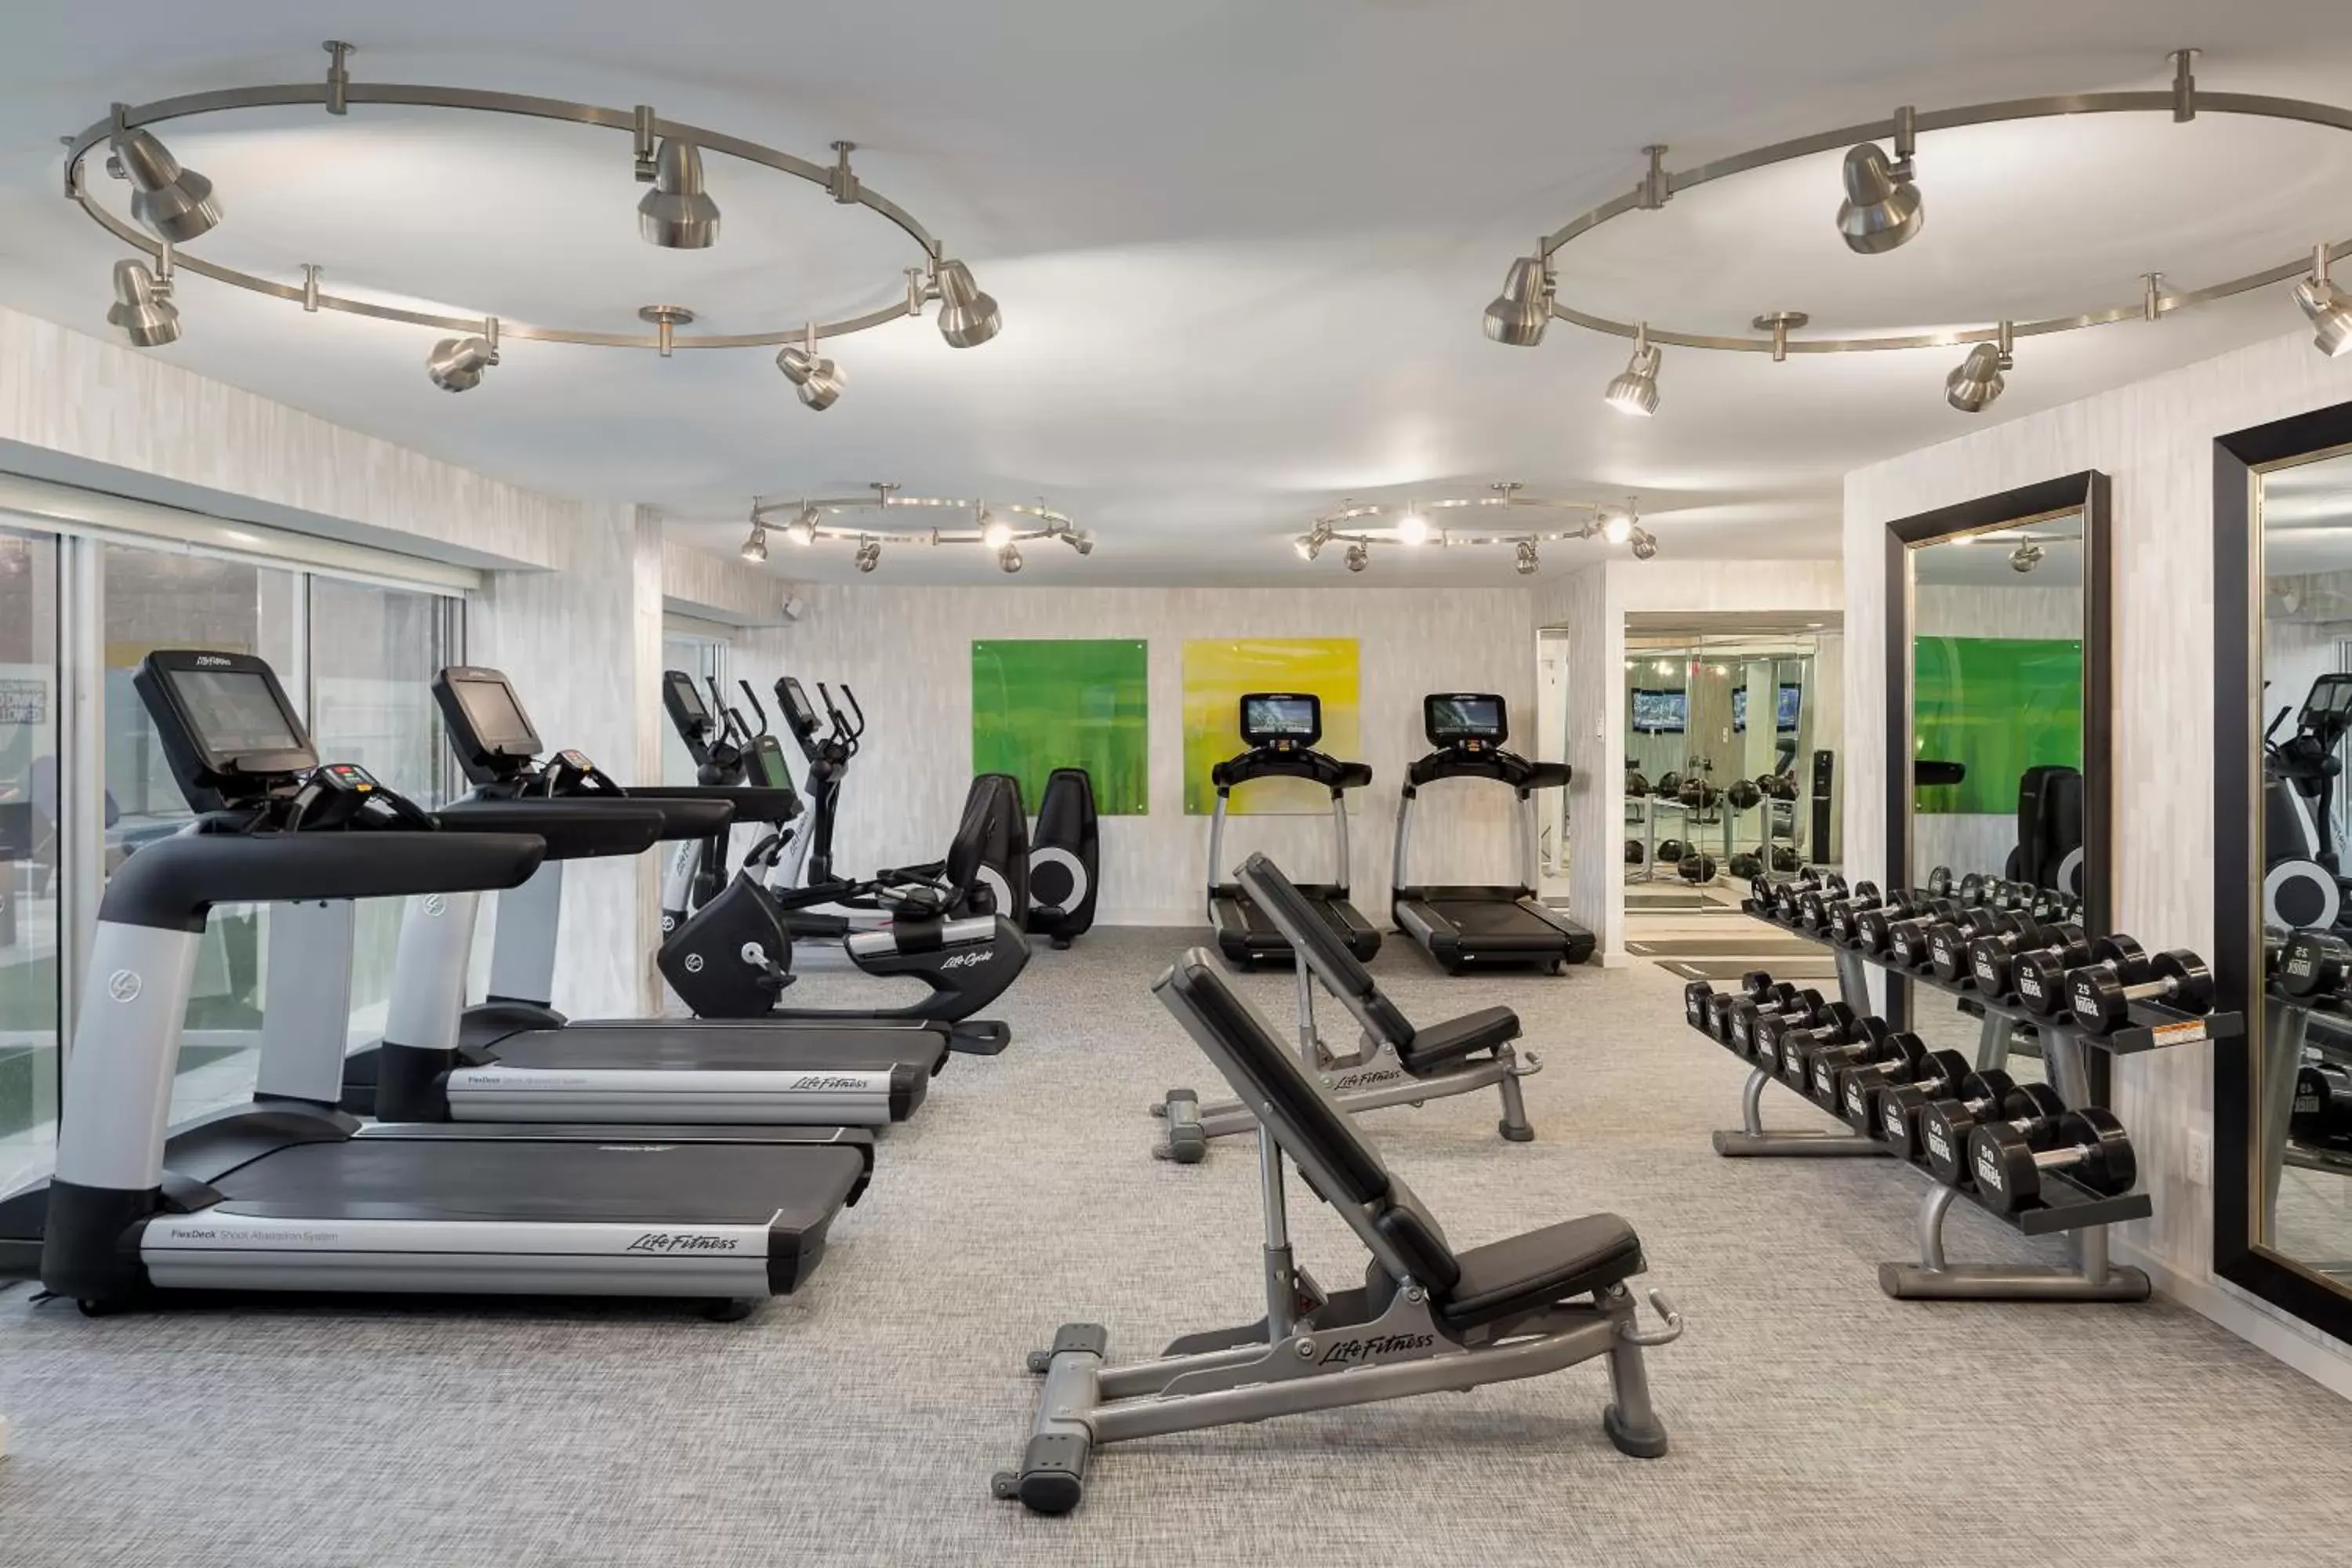 Fitness centre/facilities, Fitness Center/Facilities in Hyatt Regency - Greenville